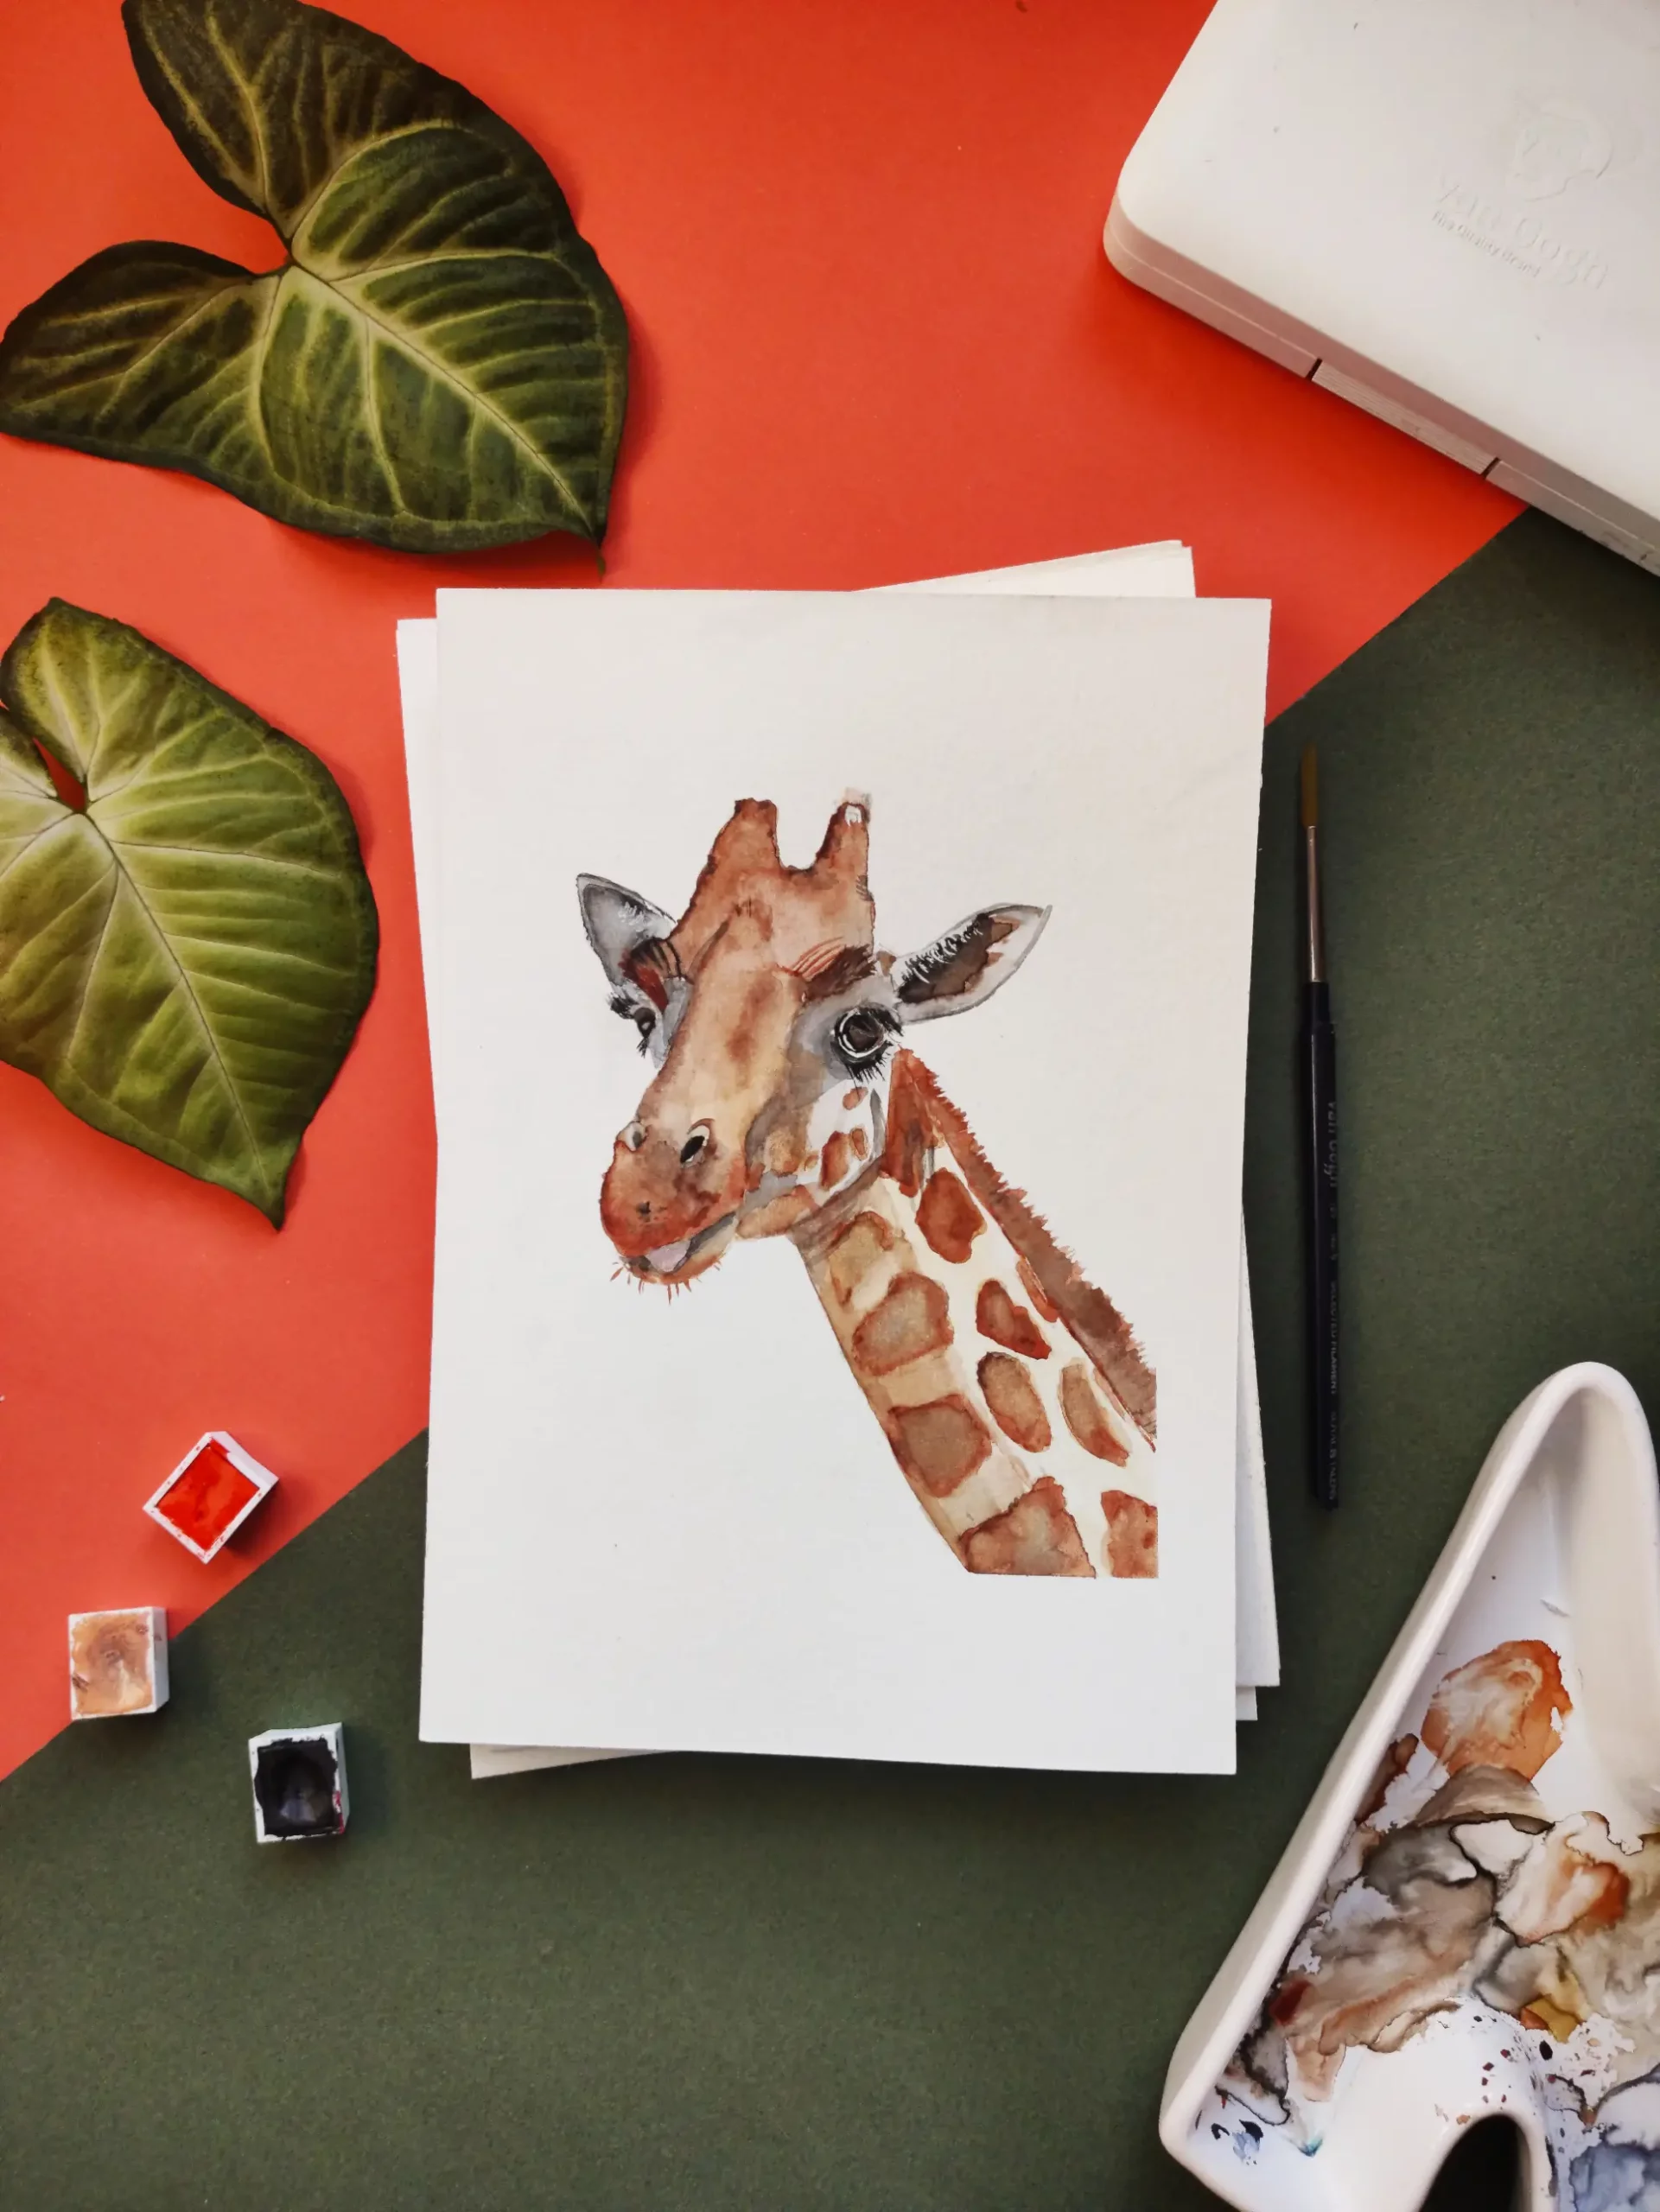 Painting of giraffe